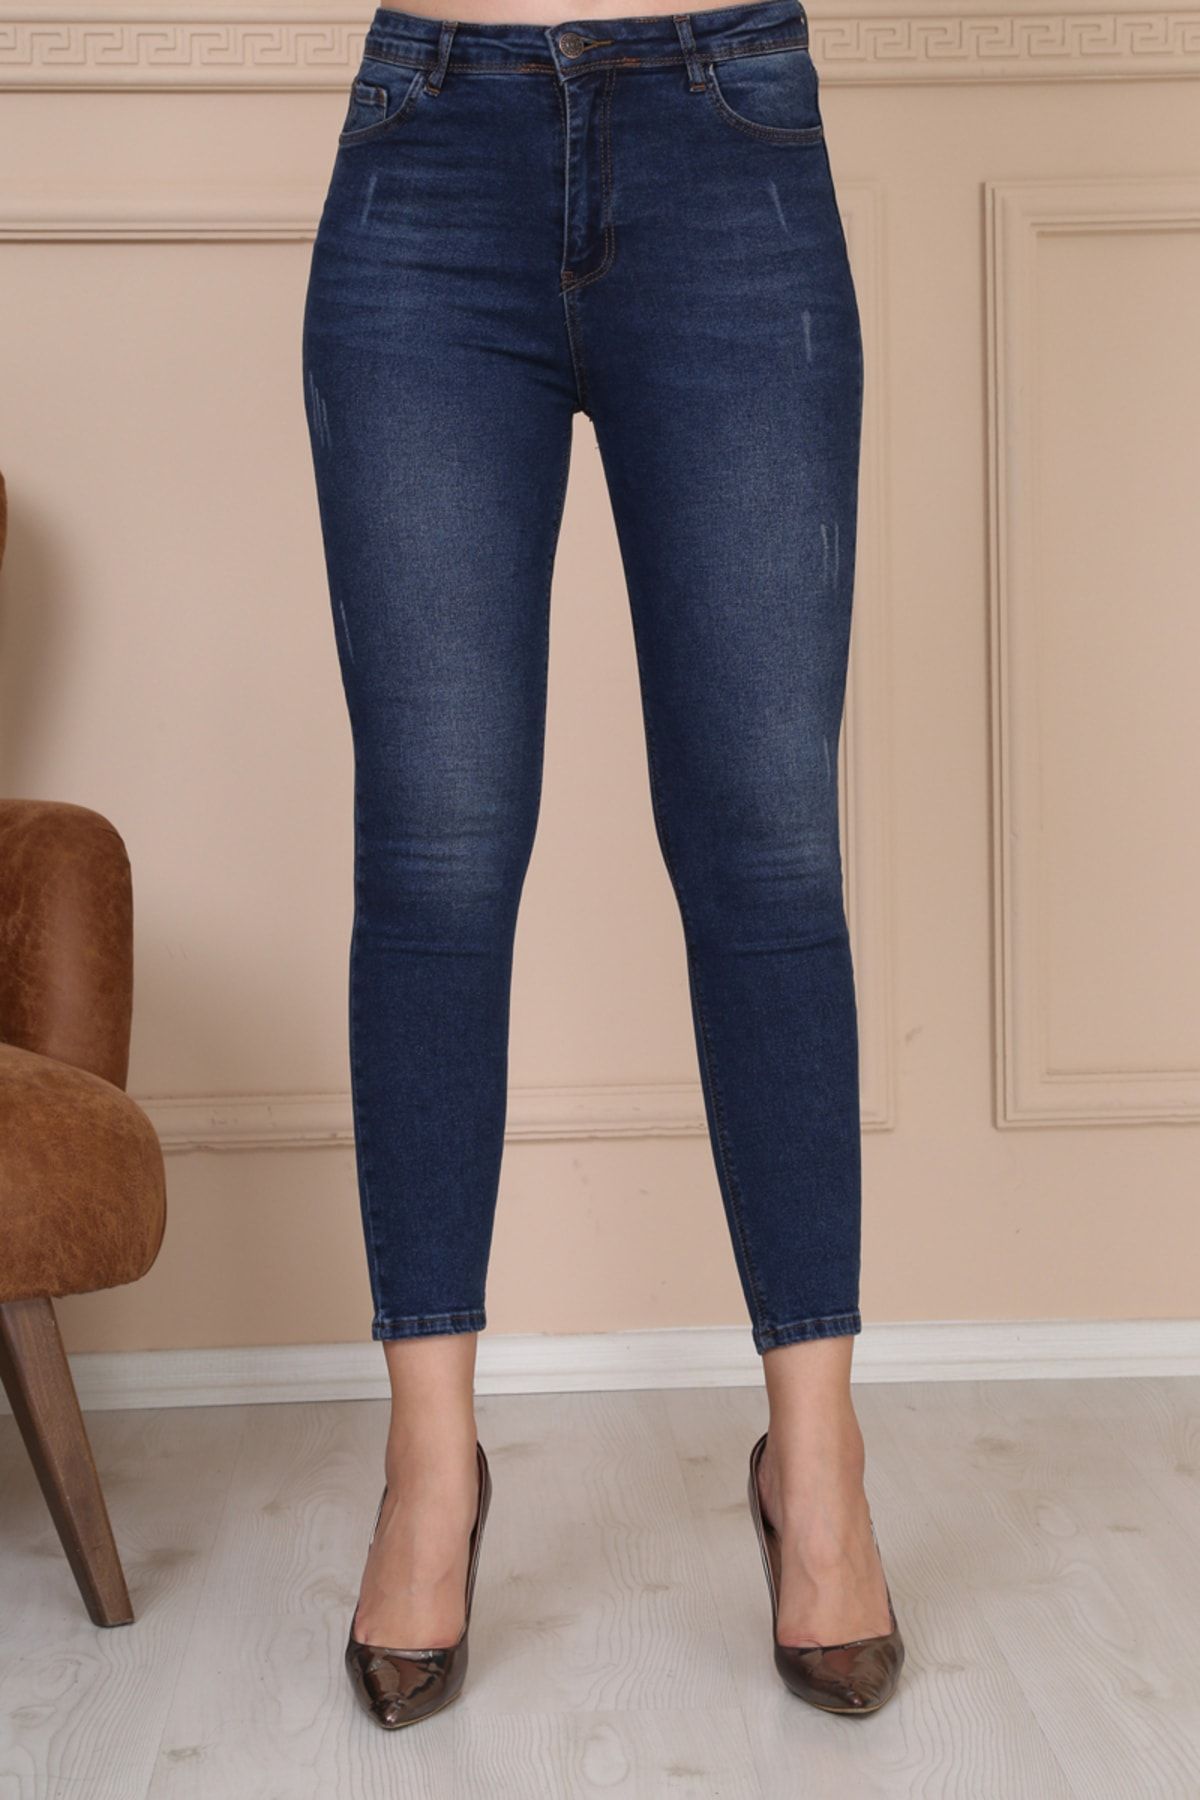 Modaca Kadın Koyu Mavi Ön Tırnak Detay Süper Yüksek Bel Jean